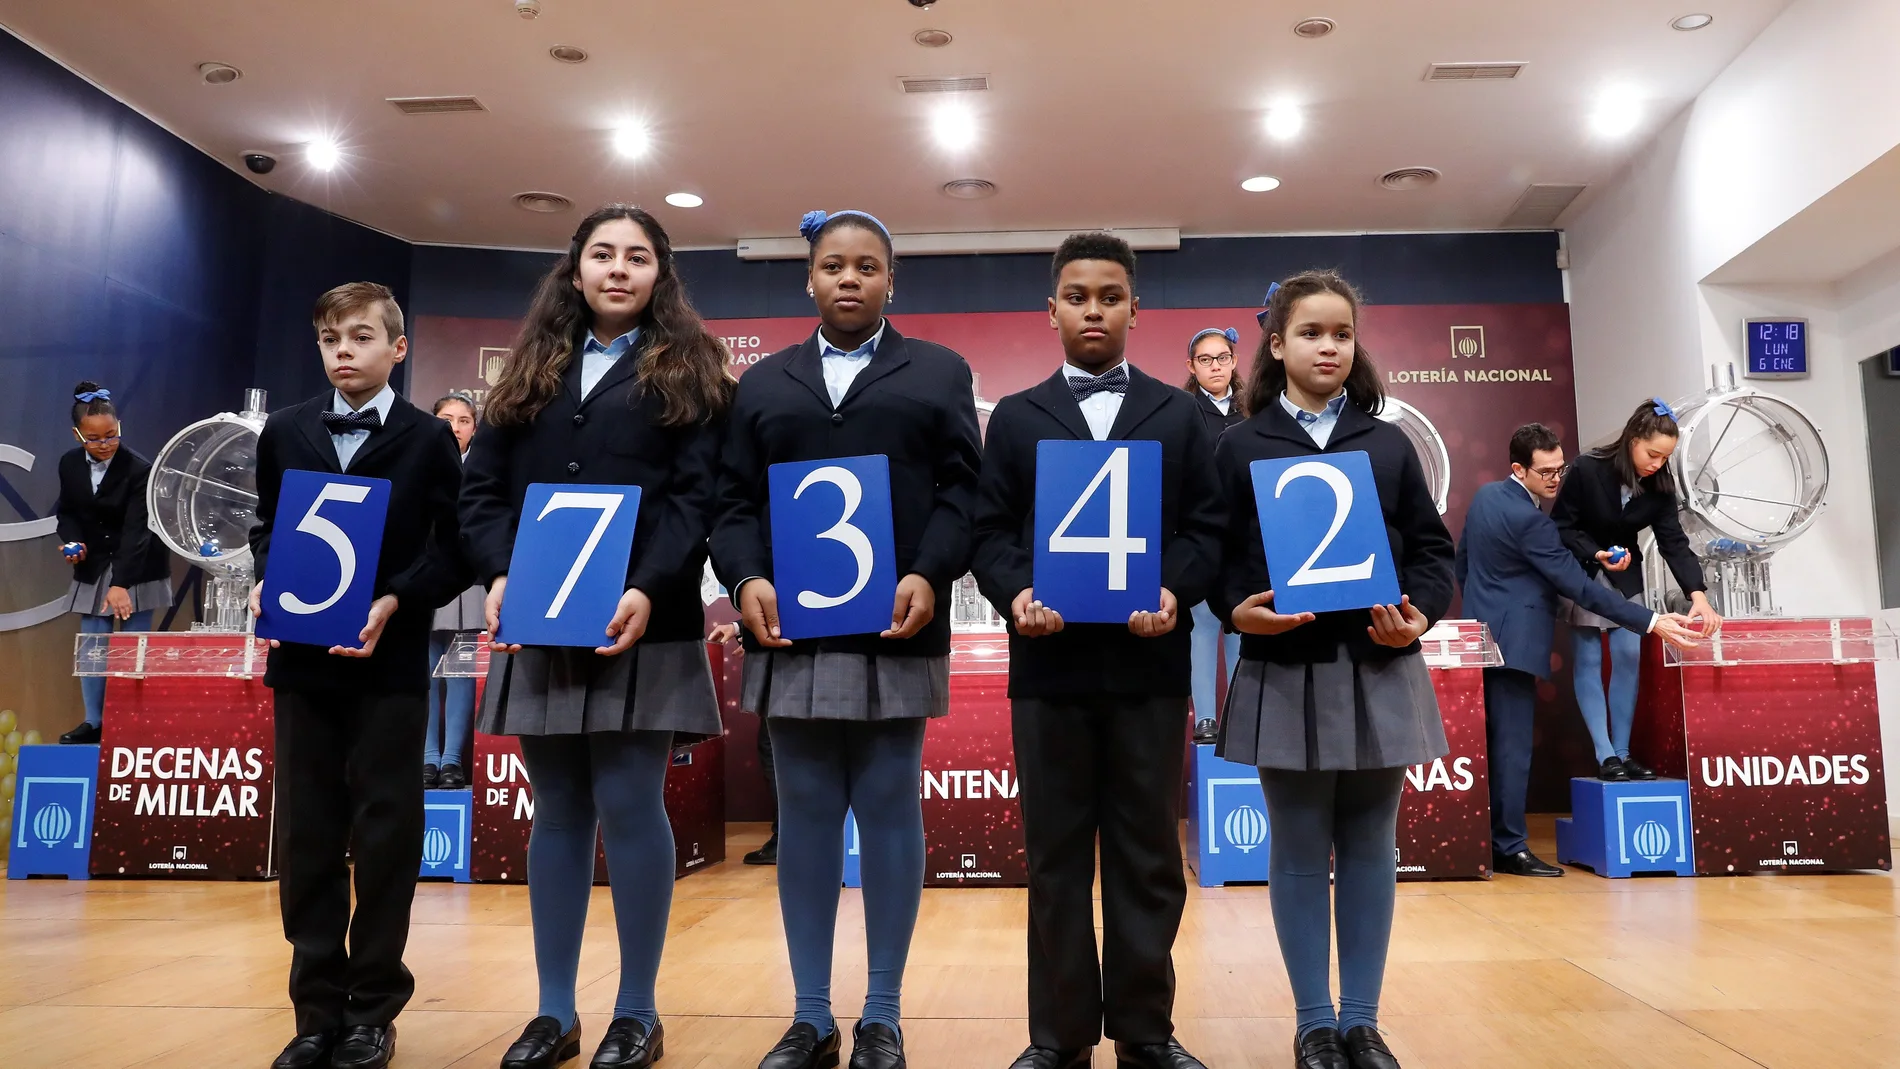 El primer premio del sorteo extraordinario de la lotería del Niño de 2020 fue el 57.342.